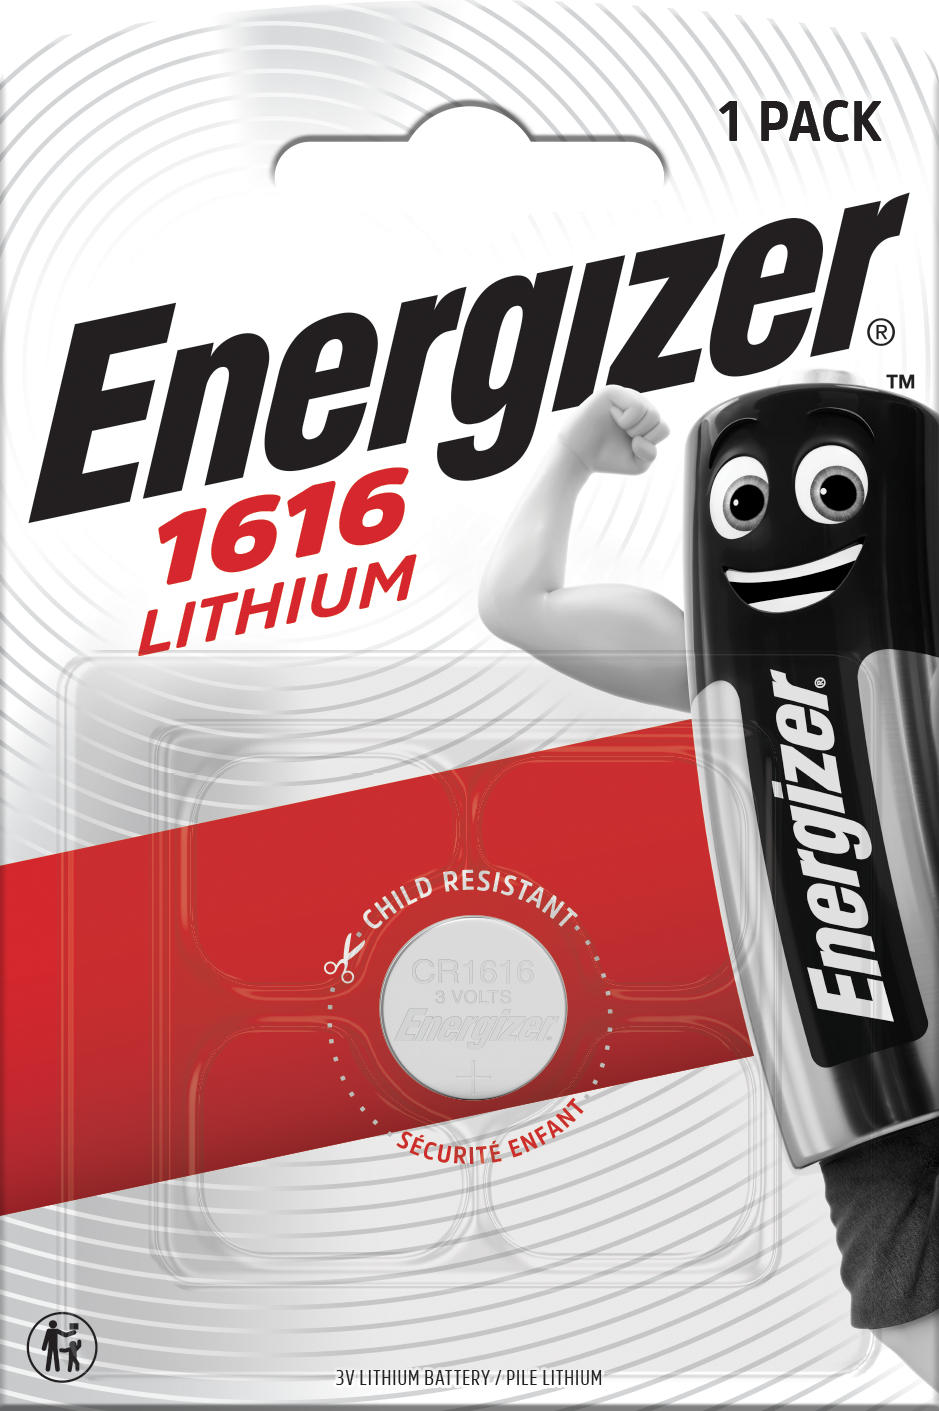 [8558869] Batteri Lithium CR1616 1p